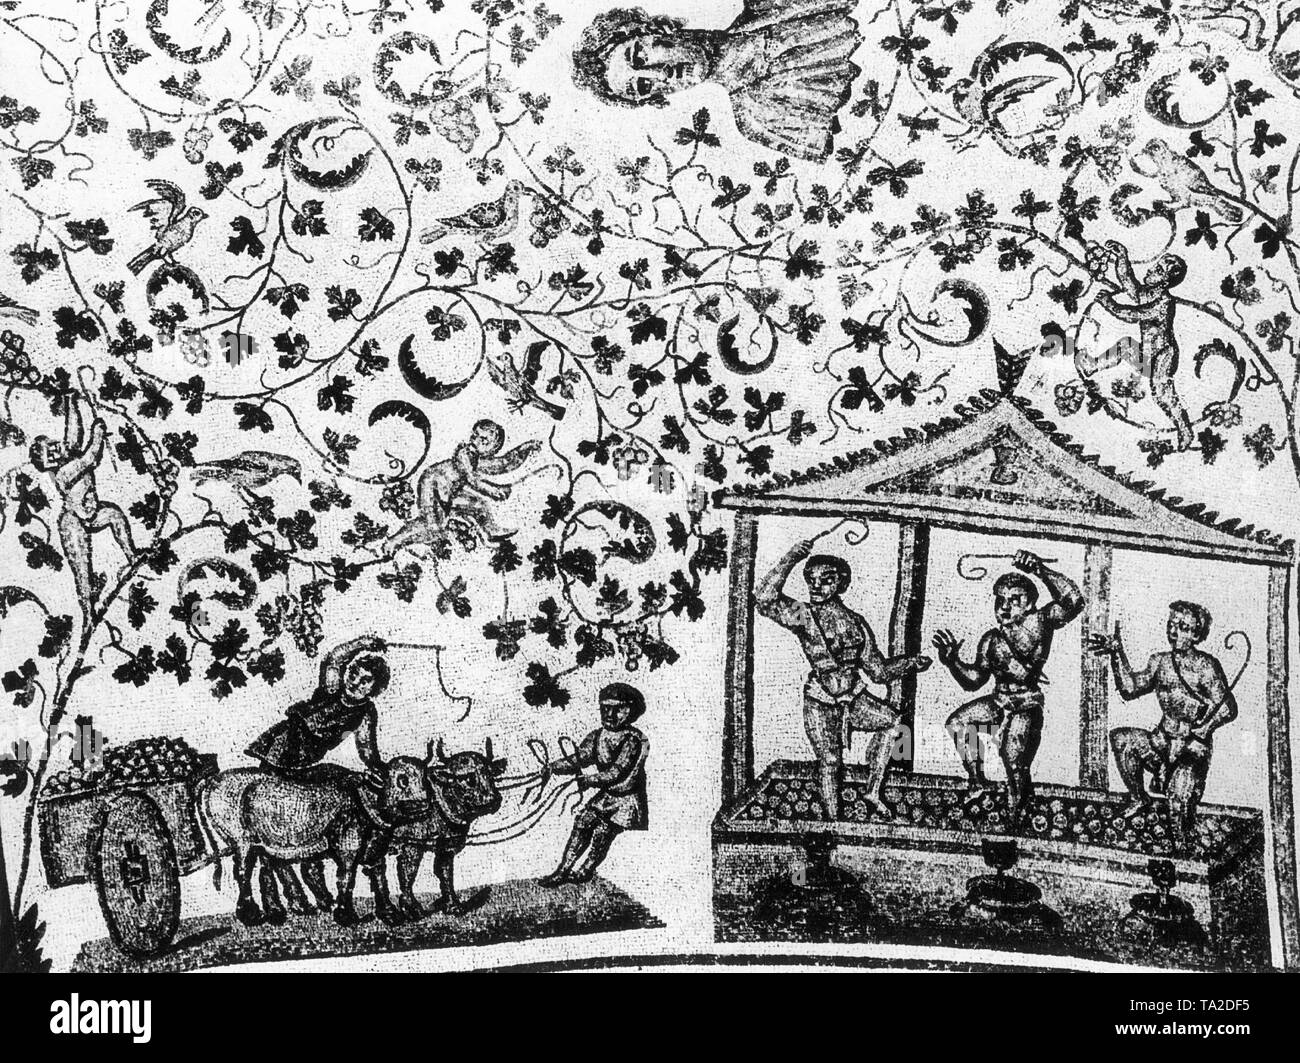 Römischen Sklaven während der Weinlese auf einem Mosaik in das Mausoleum der Constantina, Tochter von Kaiser Konstantin, dass rund 345 AD im Norden gebaut wurde - östlich von Rom. Den Kopf in den weinblättern Ornament ist wahrscheinlich ein Porträt von Constantina. Stockfoto